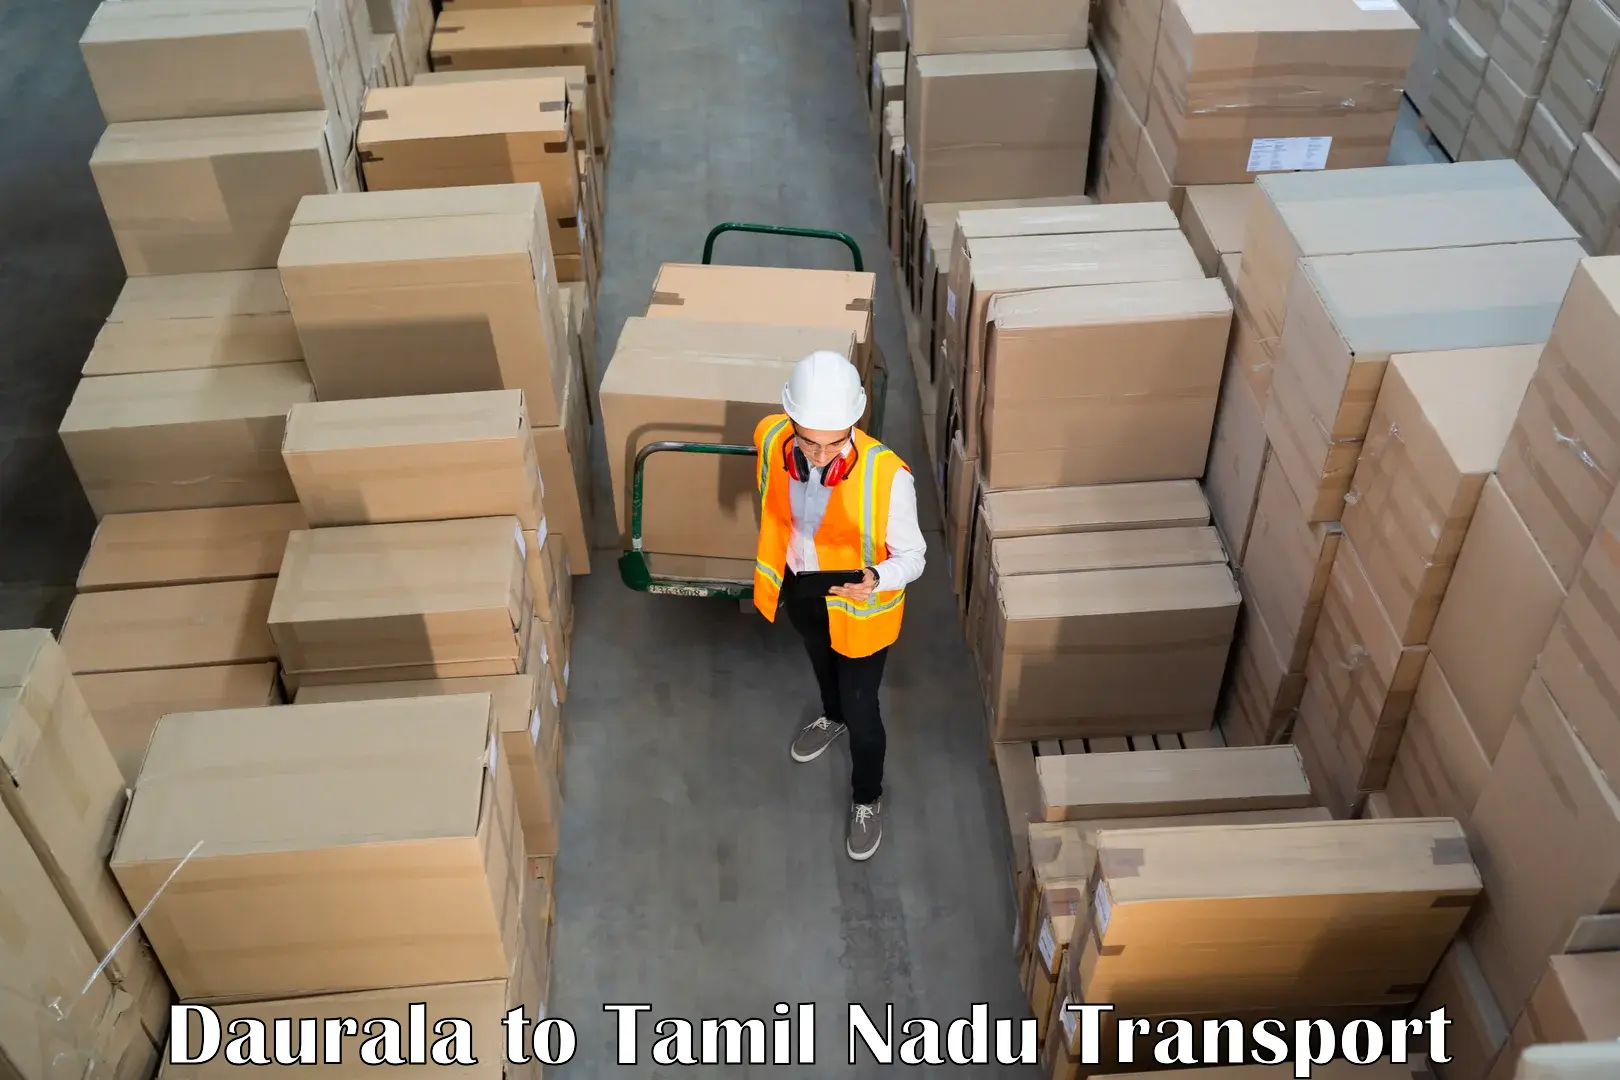 Vehicle transport services Daurala to Karaikudi